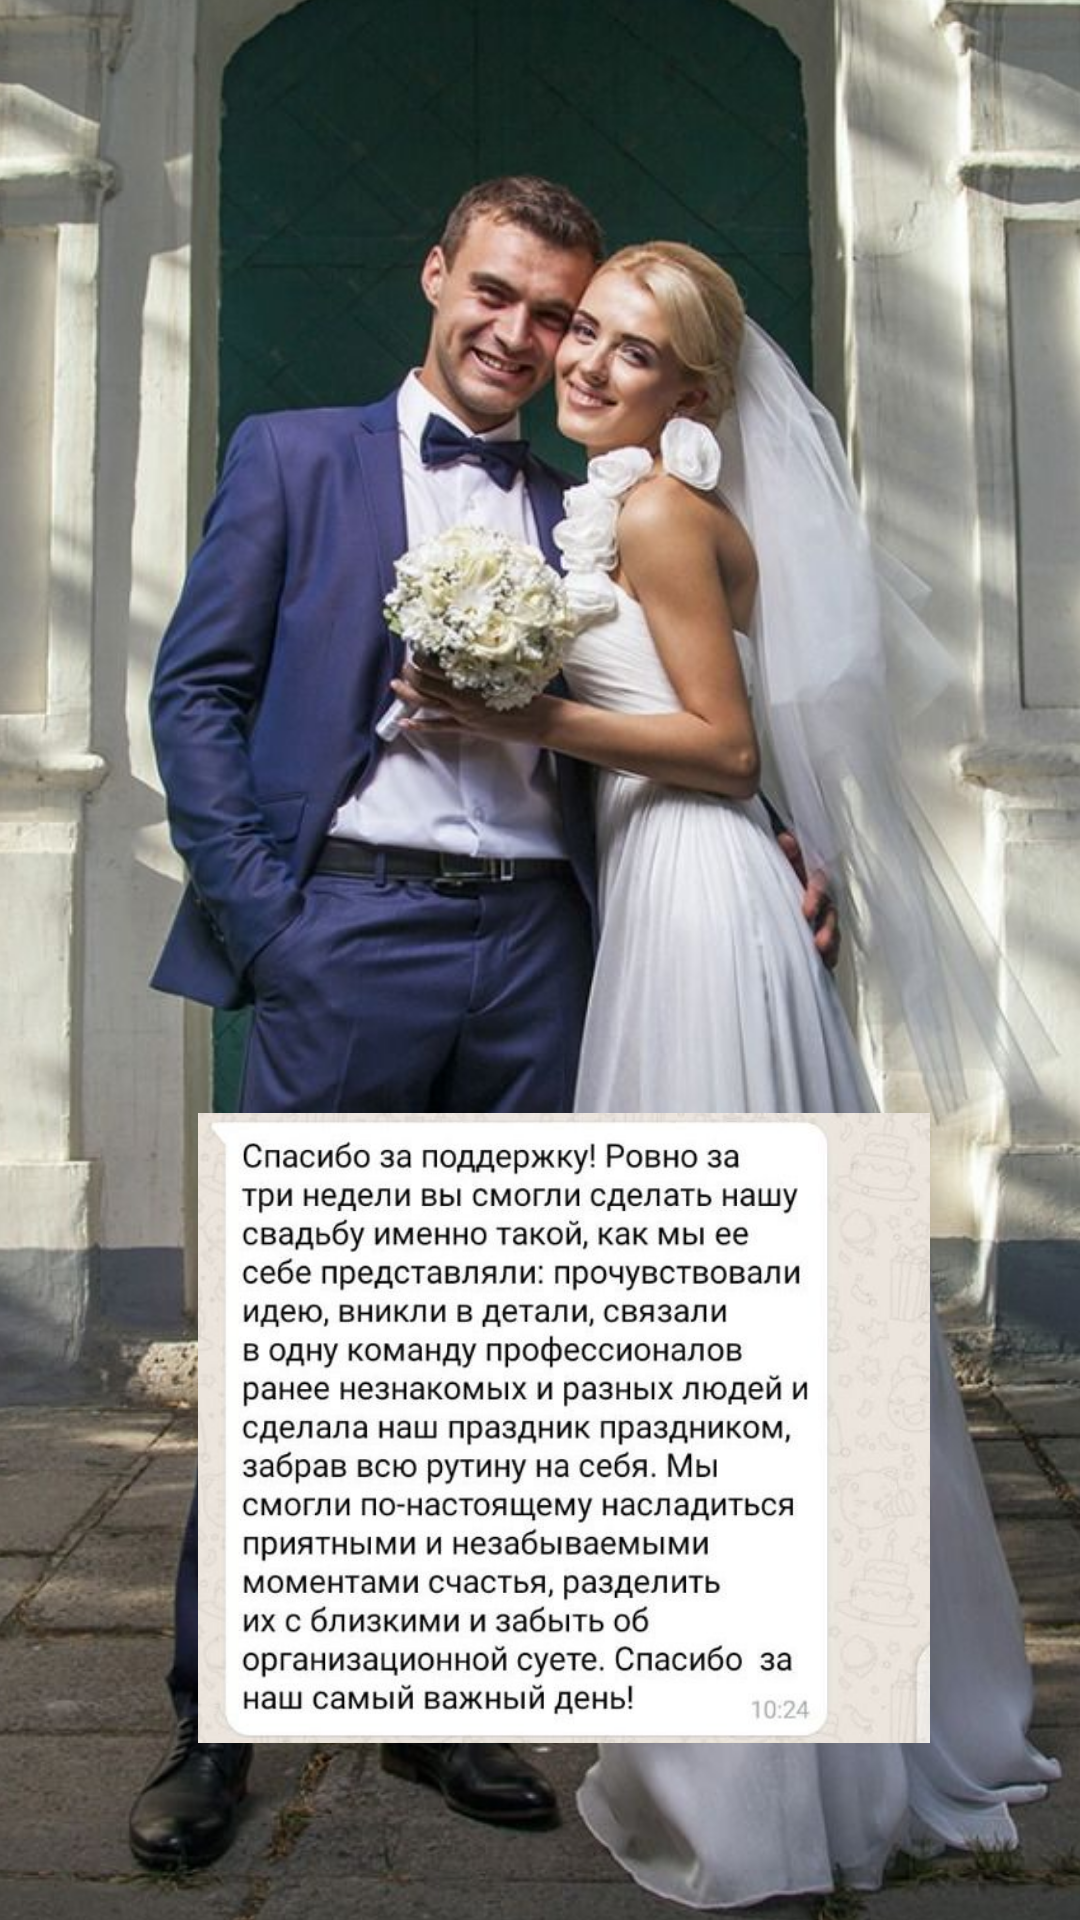 Организация свадьбы в Липецке
от компании Pandaevent